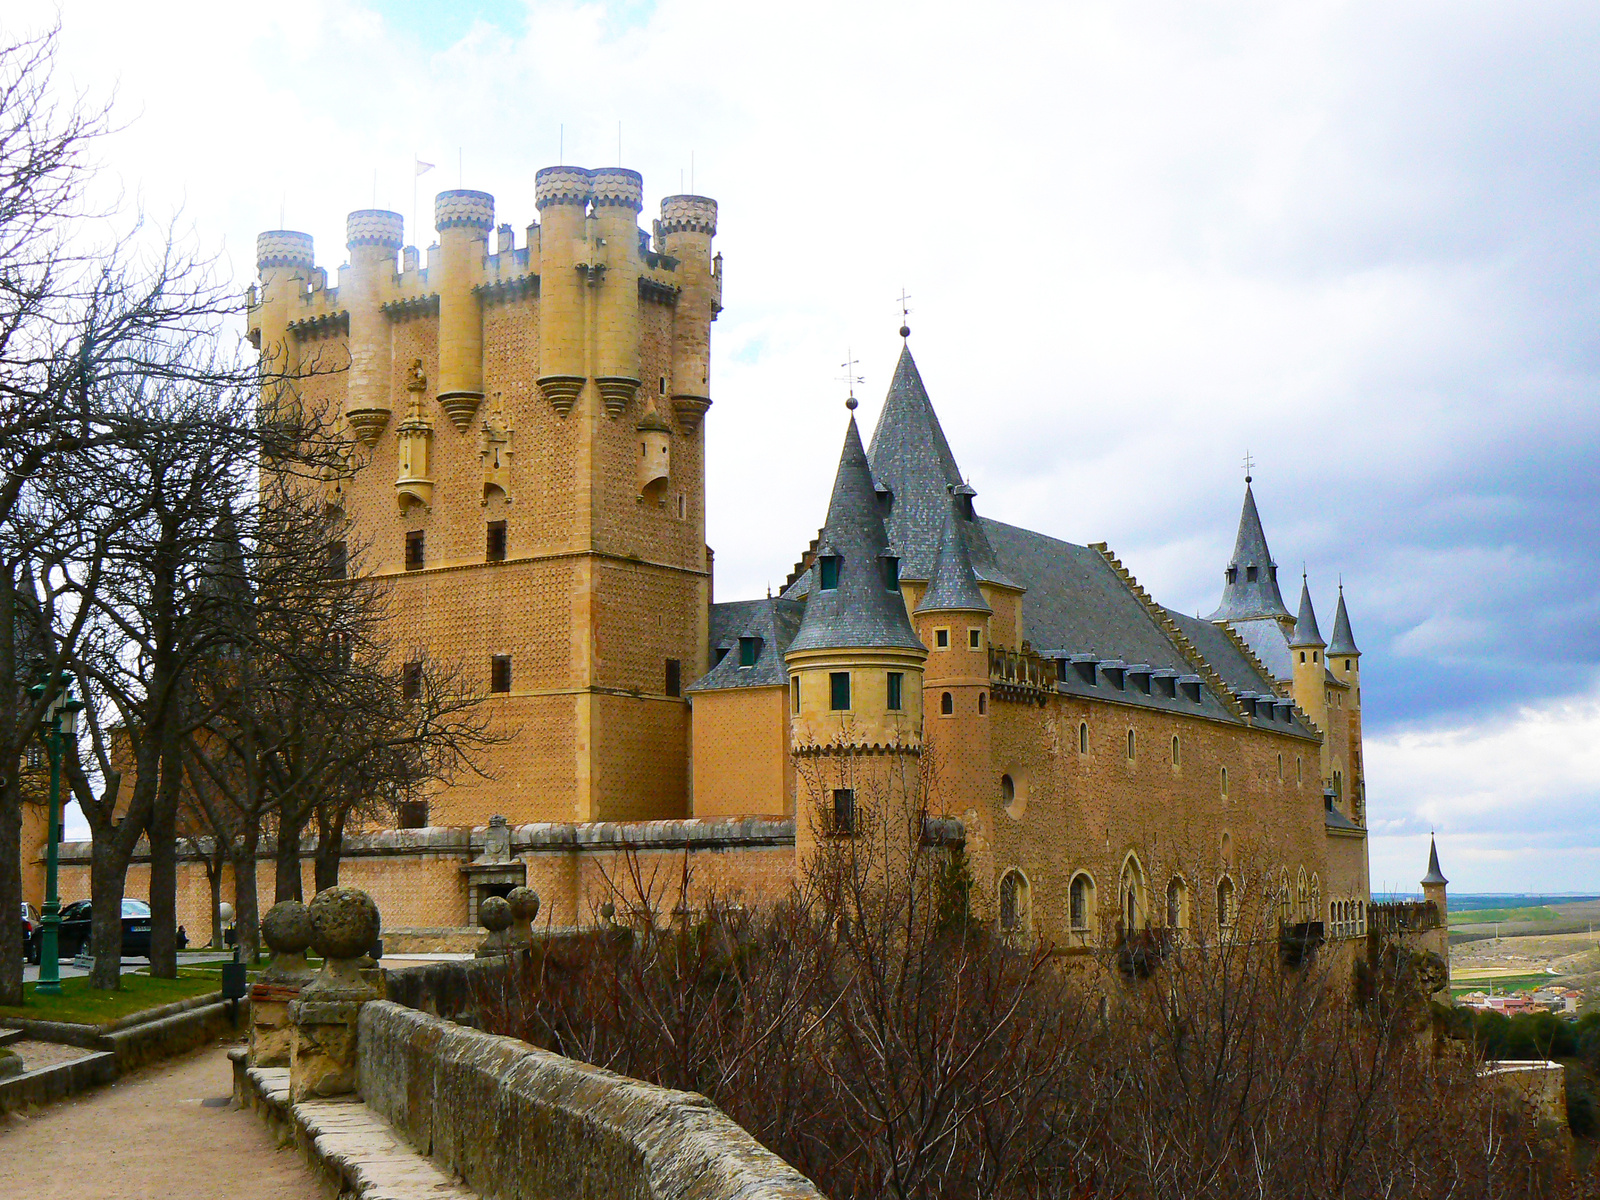 Mesevár (Segovia)